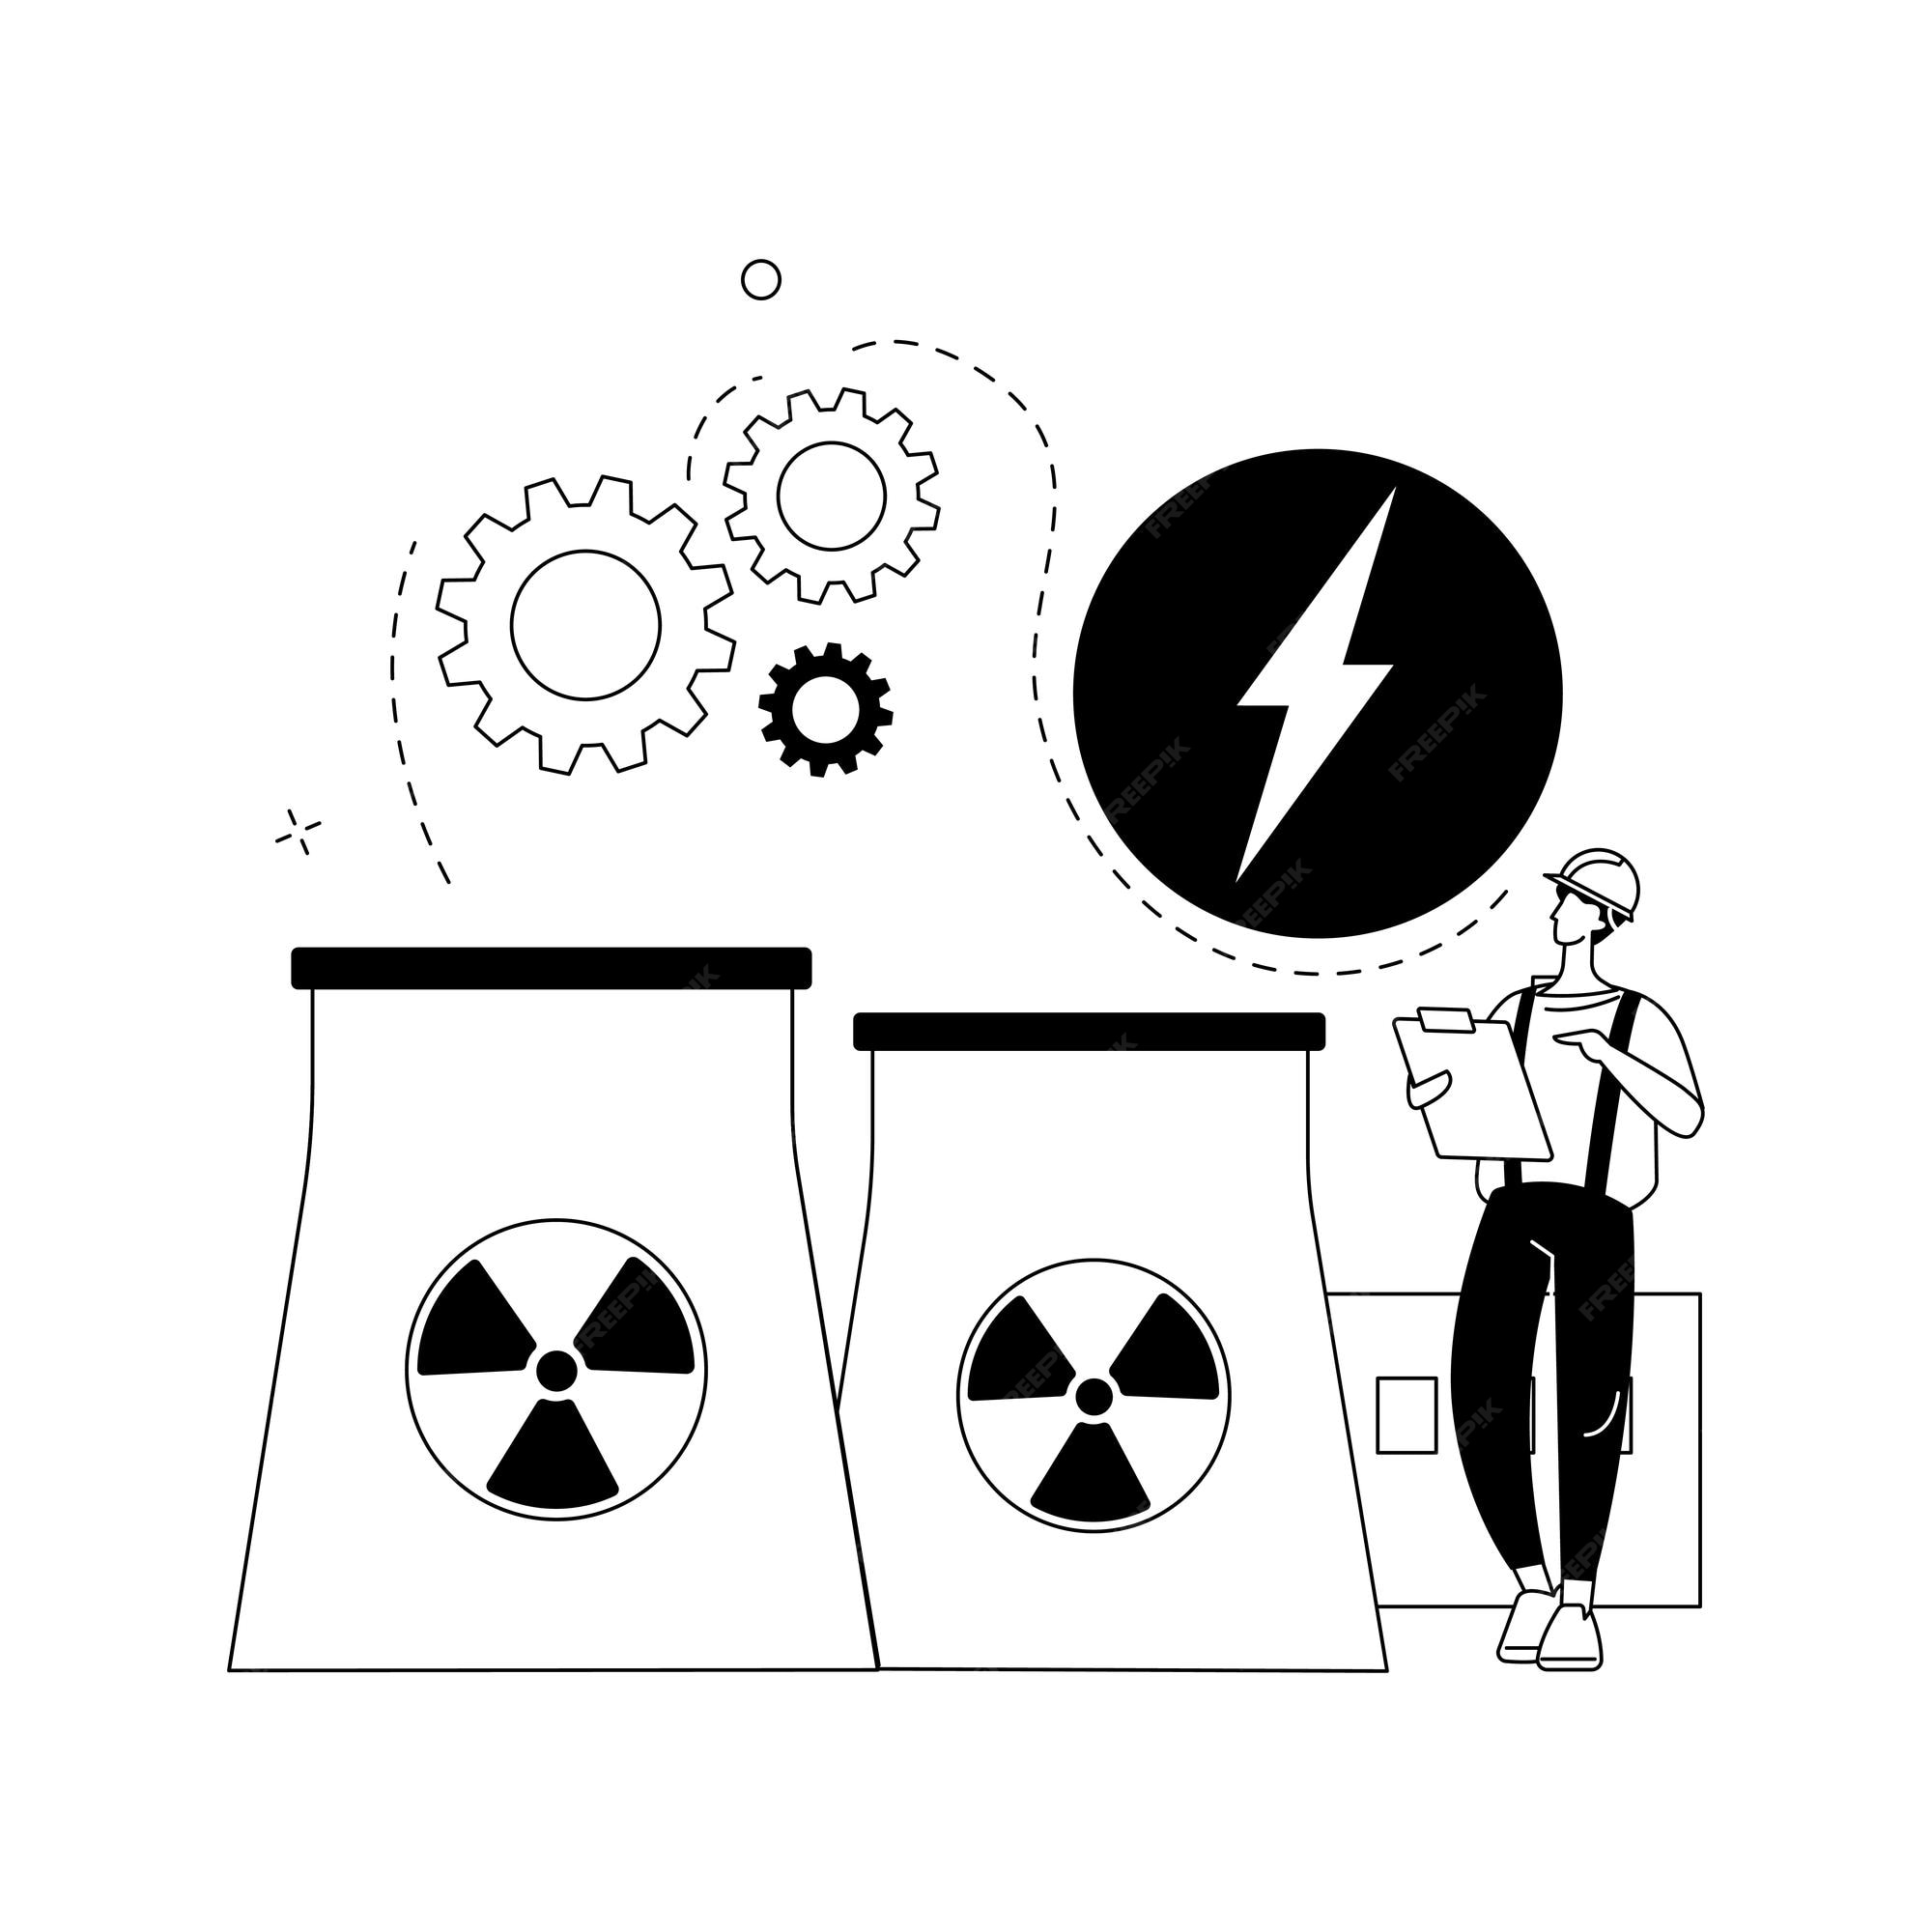 Vectores e ilustraciones de Energia nuclear para descargar gratis | Freepik